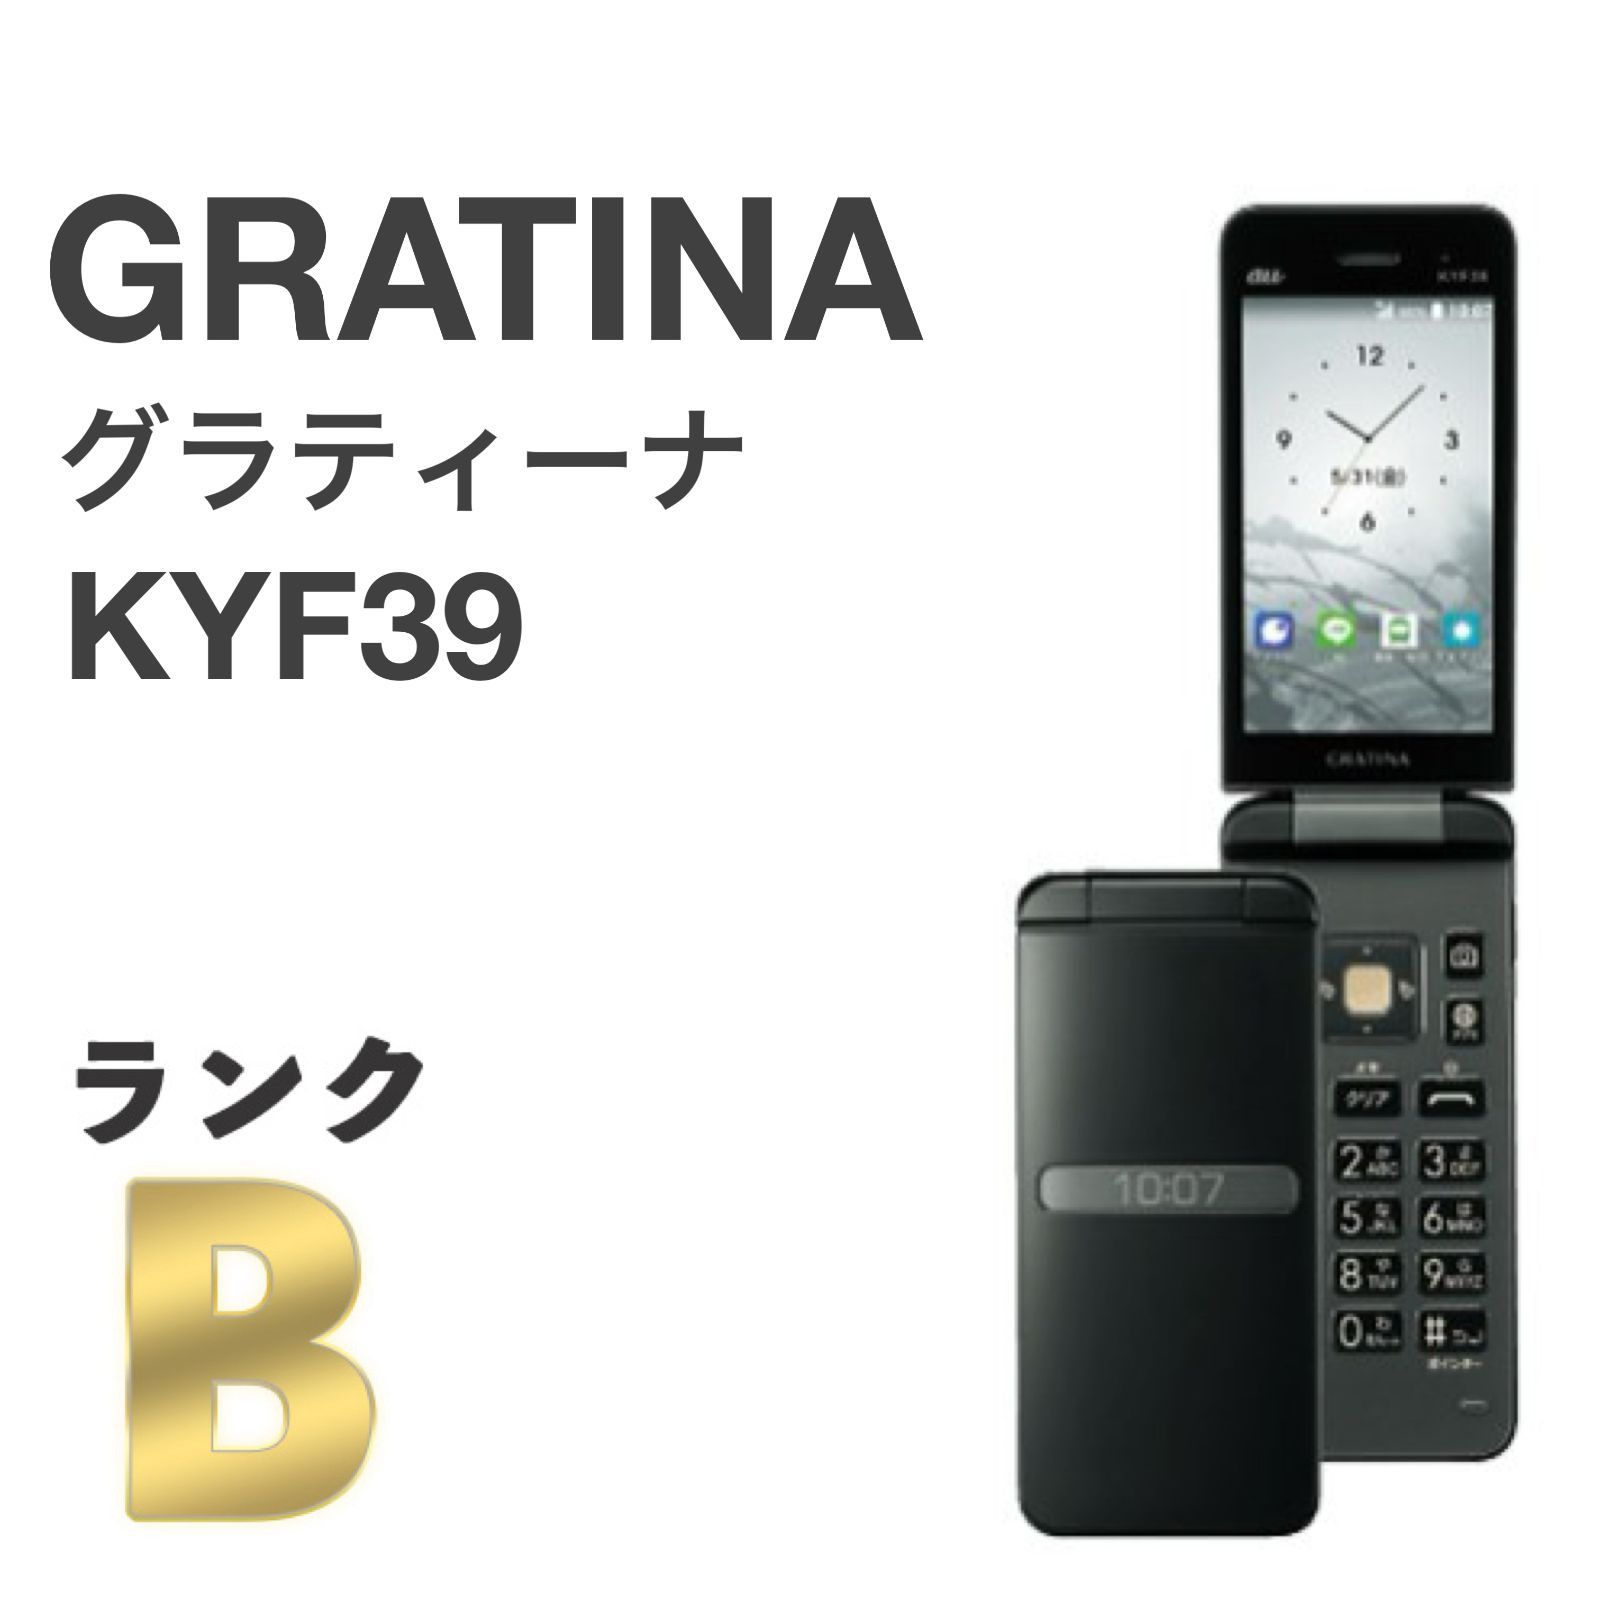 良品 GRATINA KYF39 墨 ブラック au SIMロック解除済み 4G LTEケータイ 